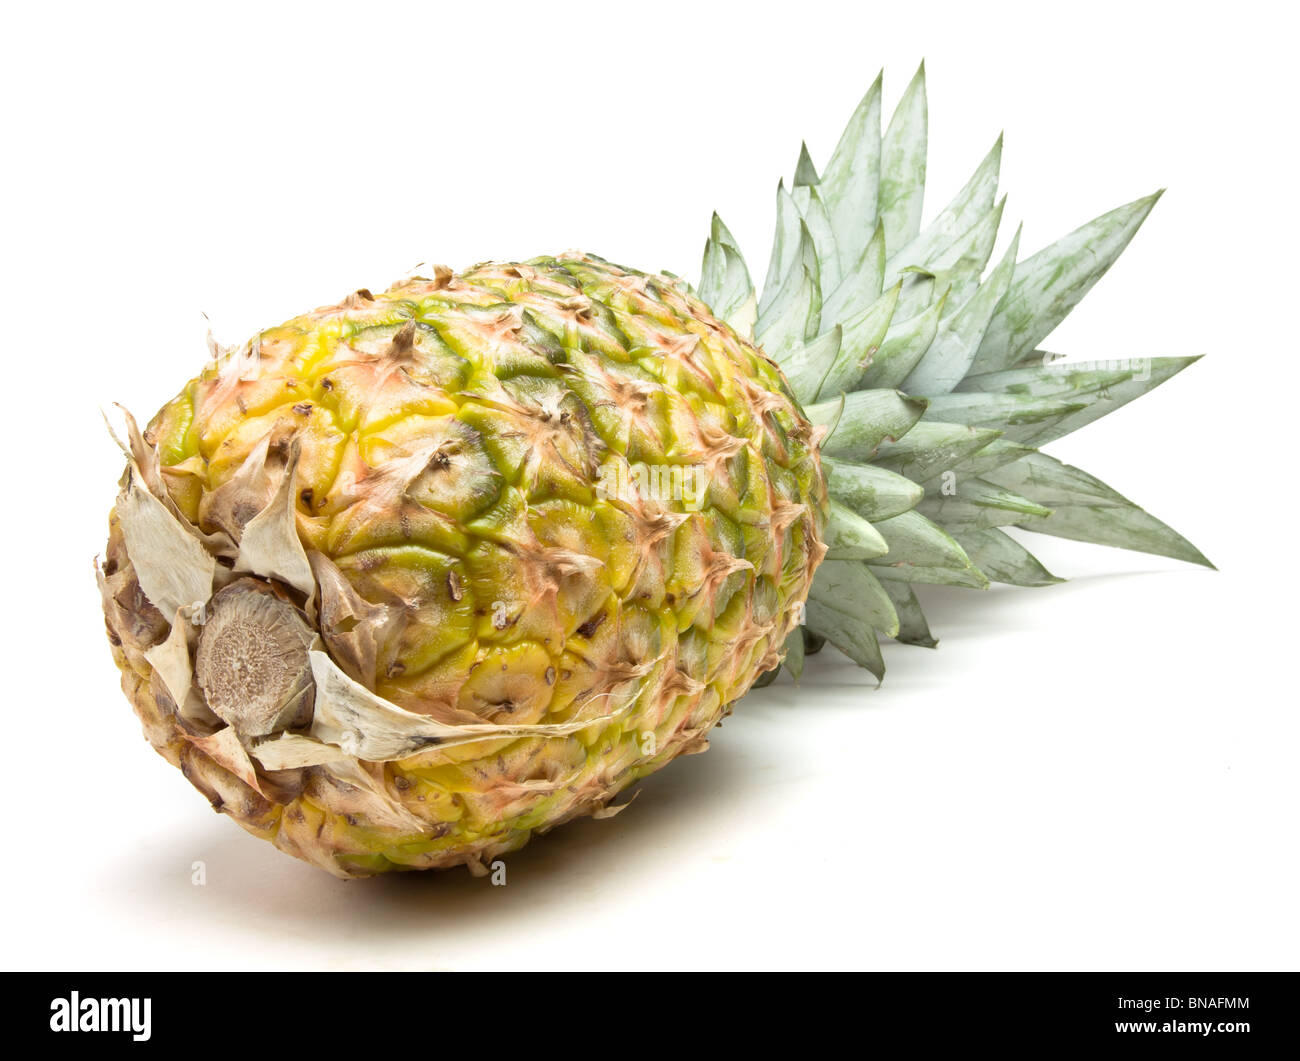 Extrait de l'ananas frais mûrs perspective basse isolés contre fond blanc. Banque D'Images